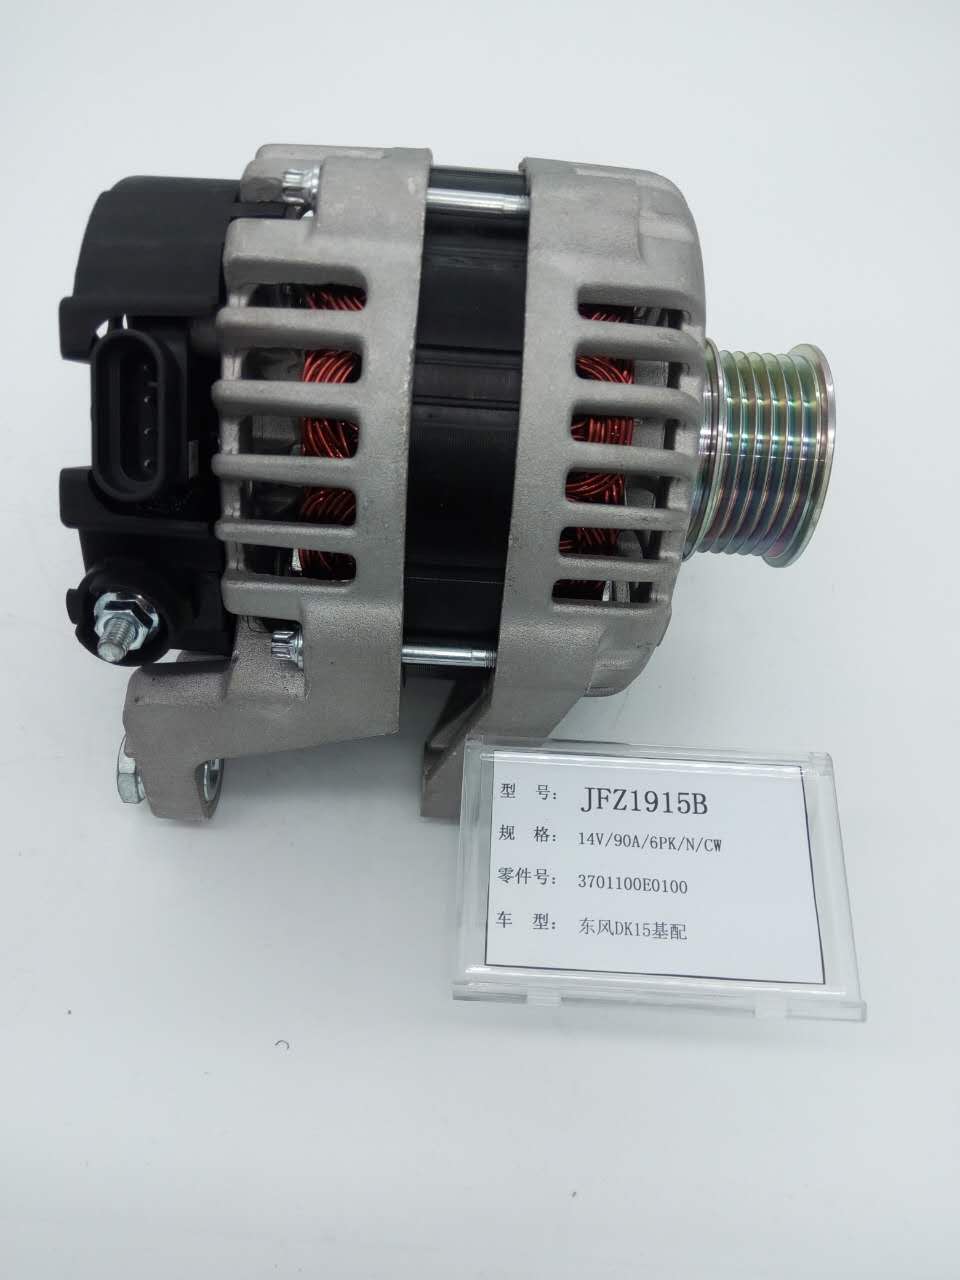 雷米發電機3701100E0100適用於東風DK15基配